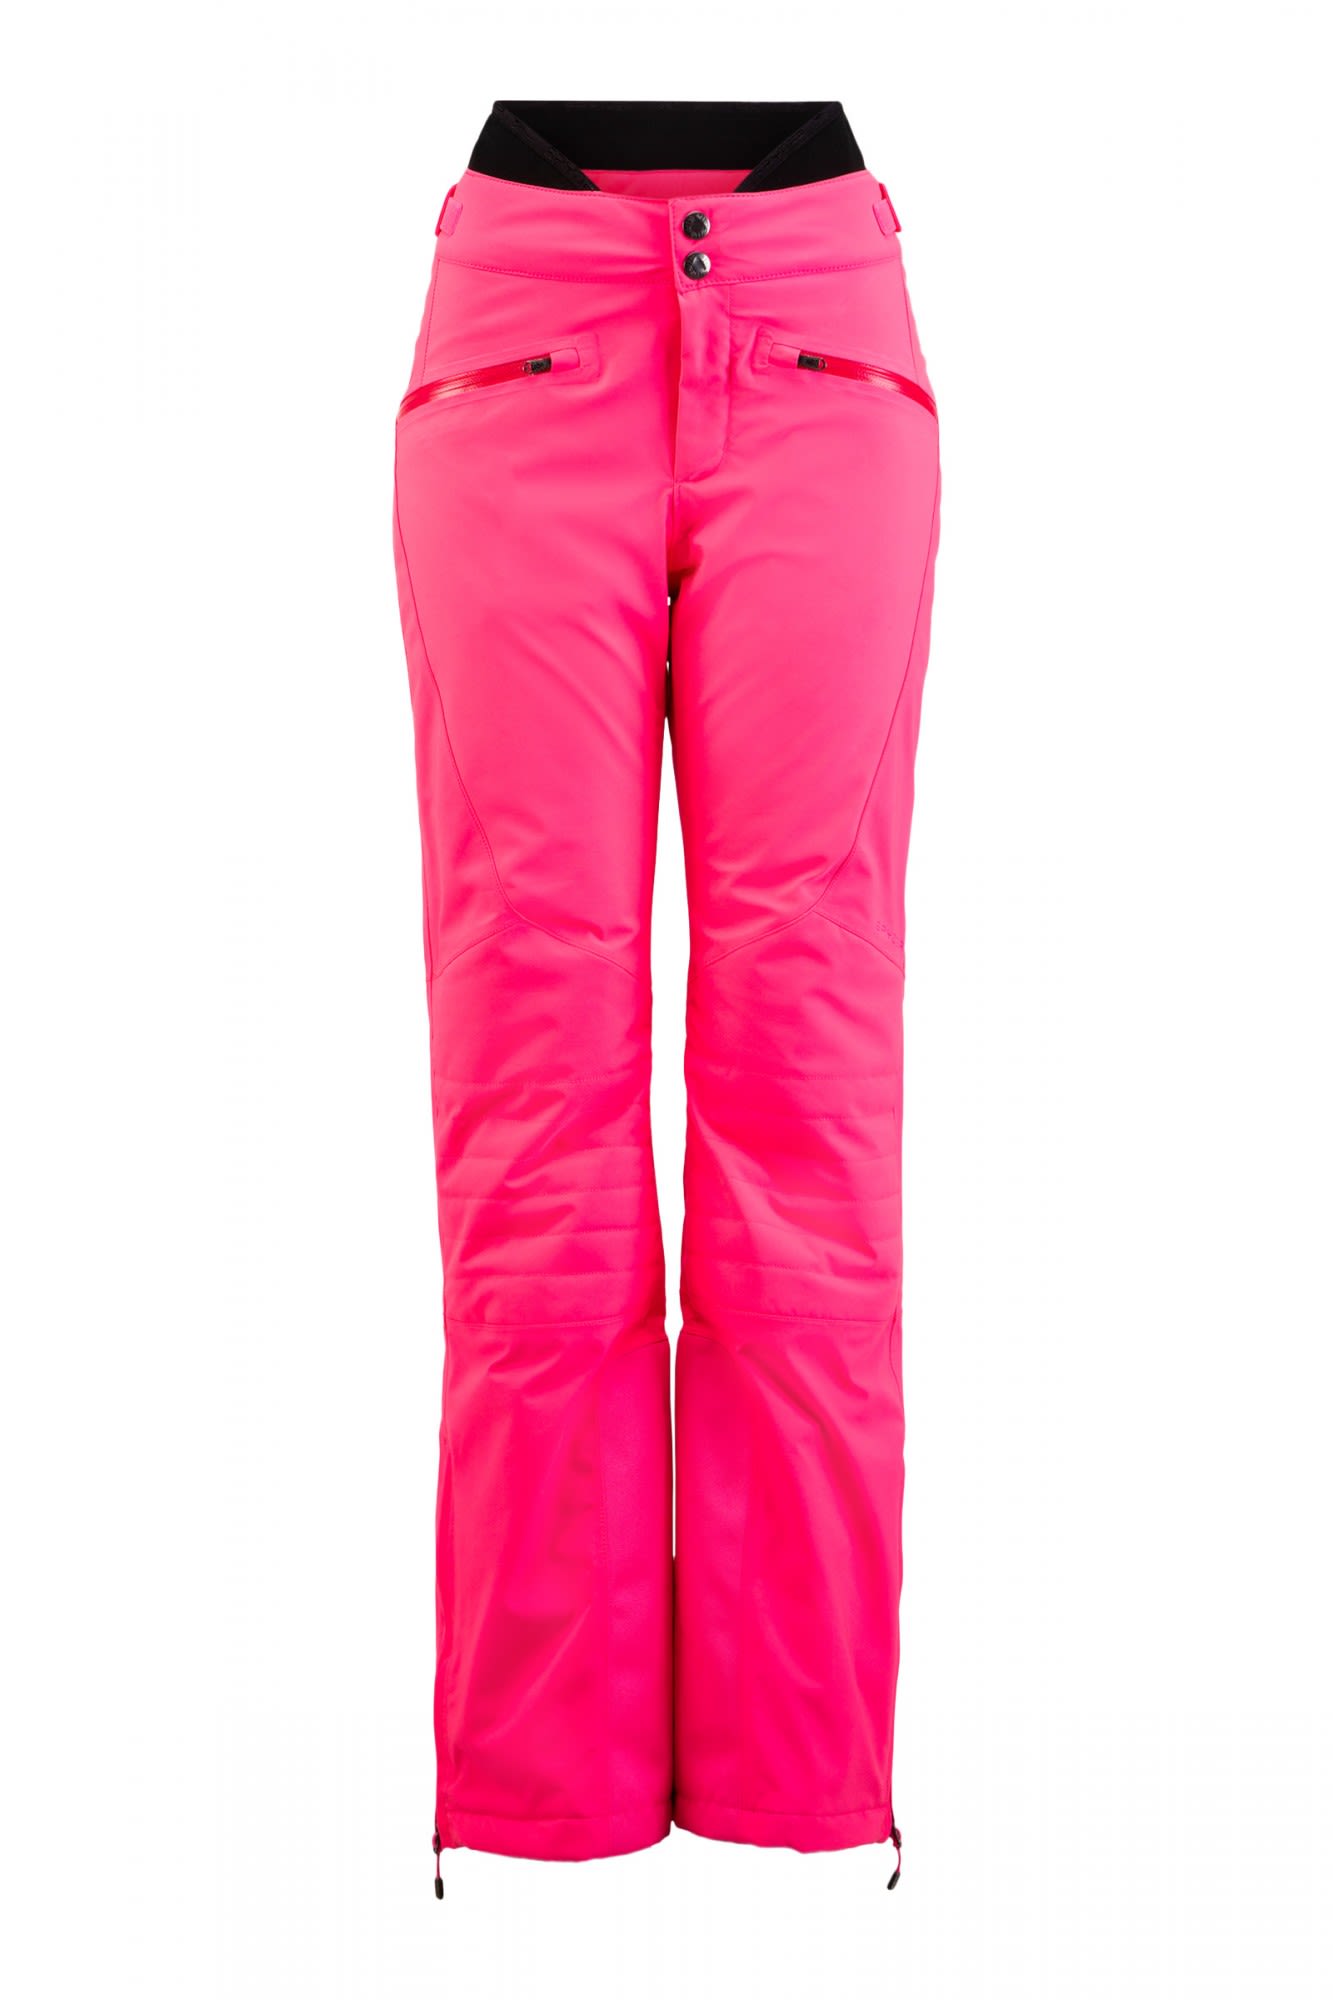 Spyder Echo Gtx(R)(R) Pant Pink- Female Gore-Tex(R) Softshellhosen- Grsse 6 - 34 - Farbe Bryte Bubblegum